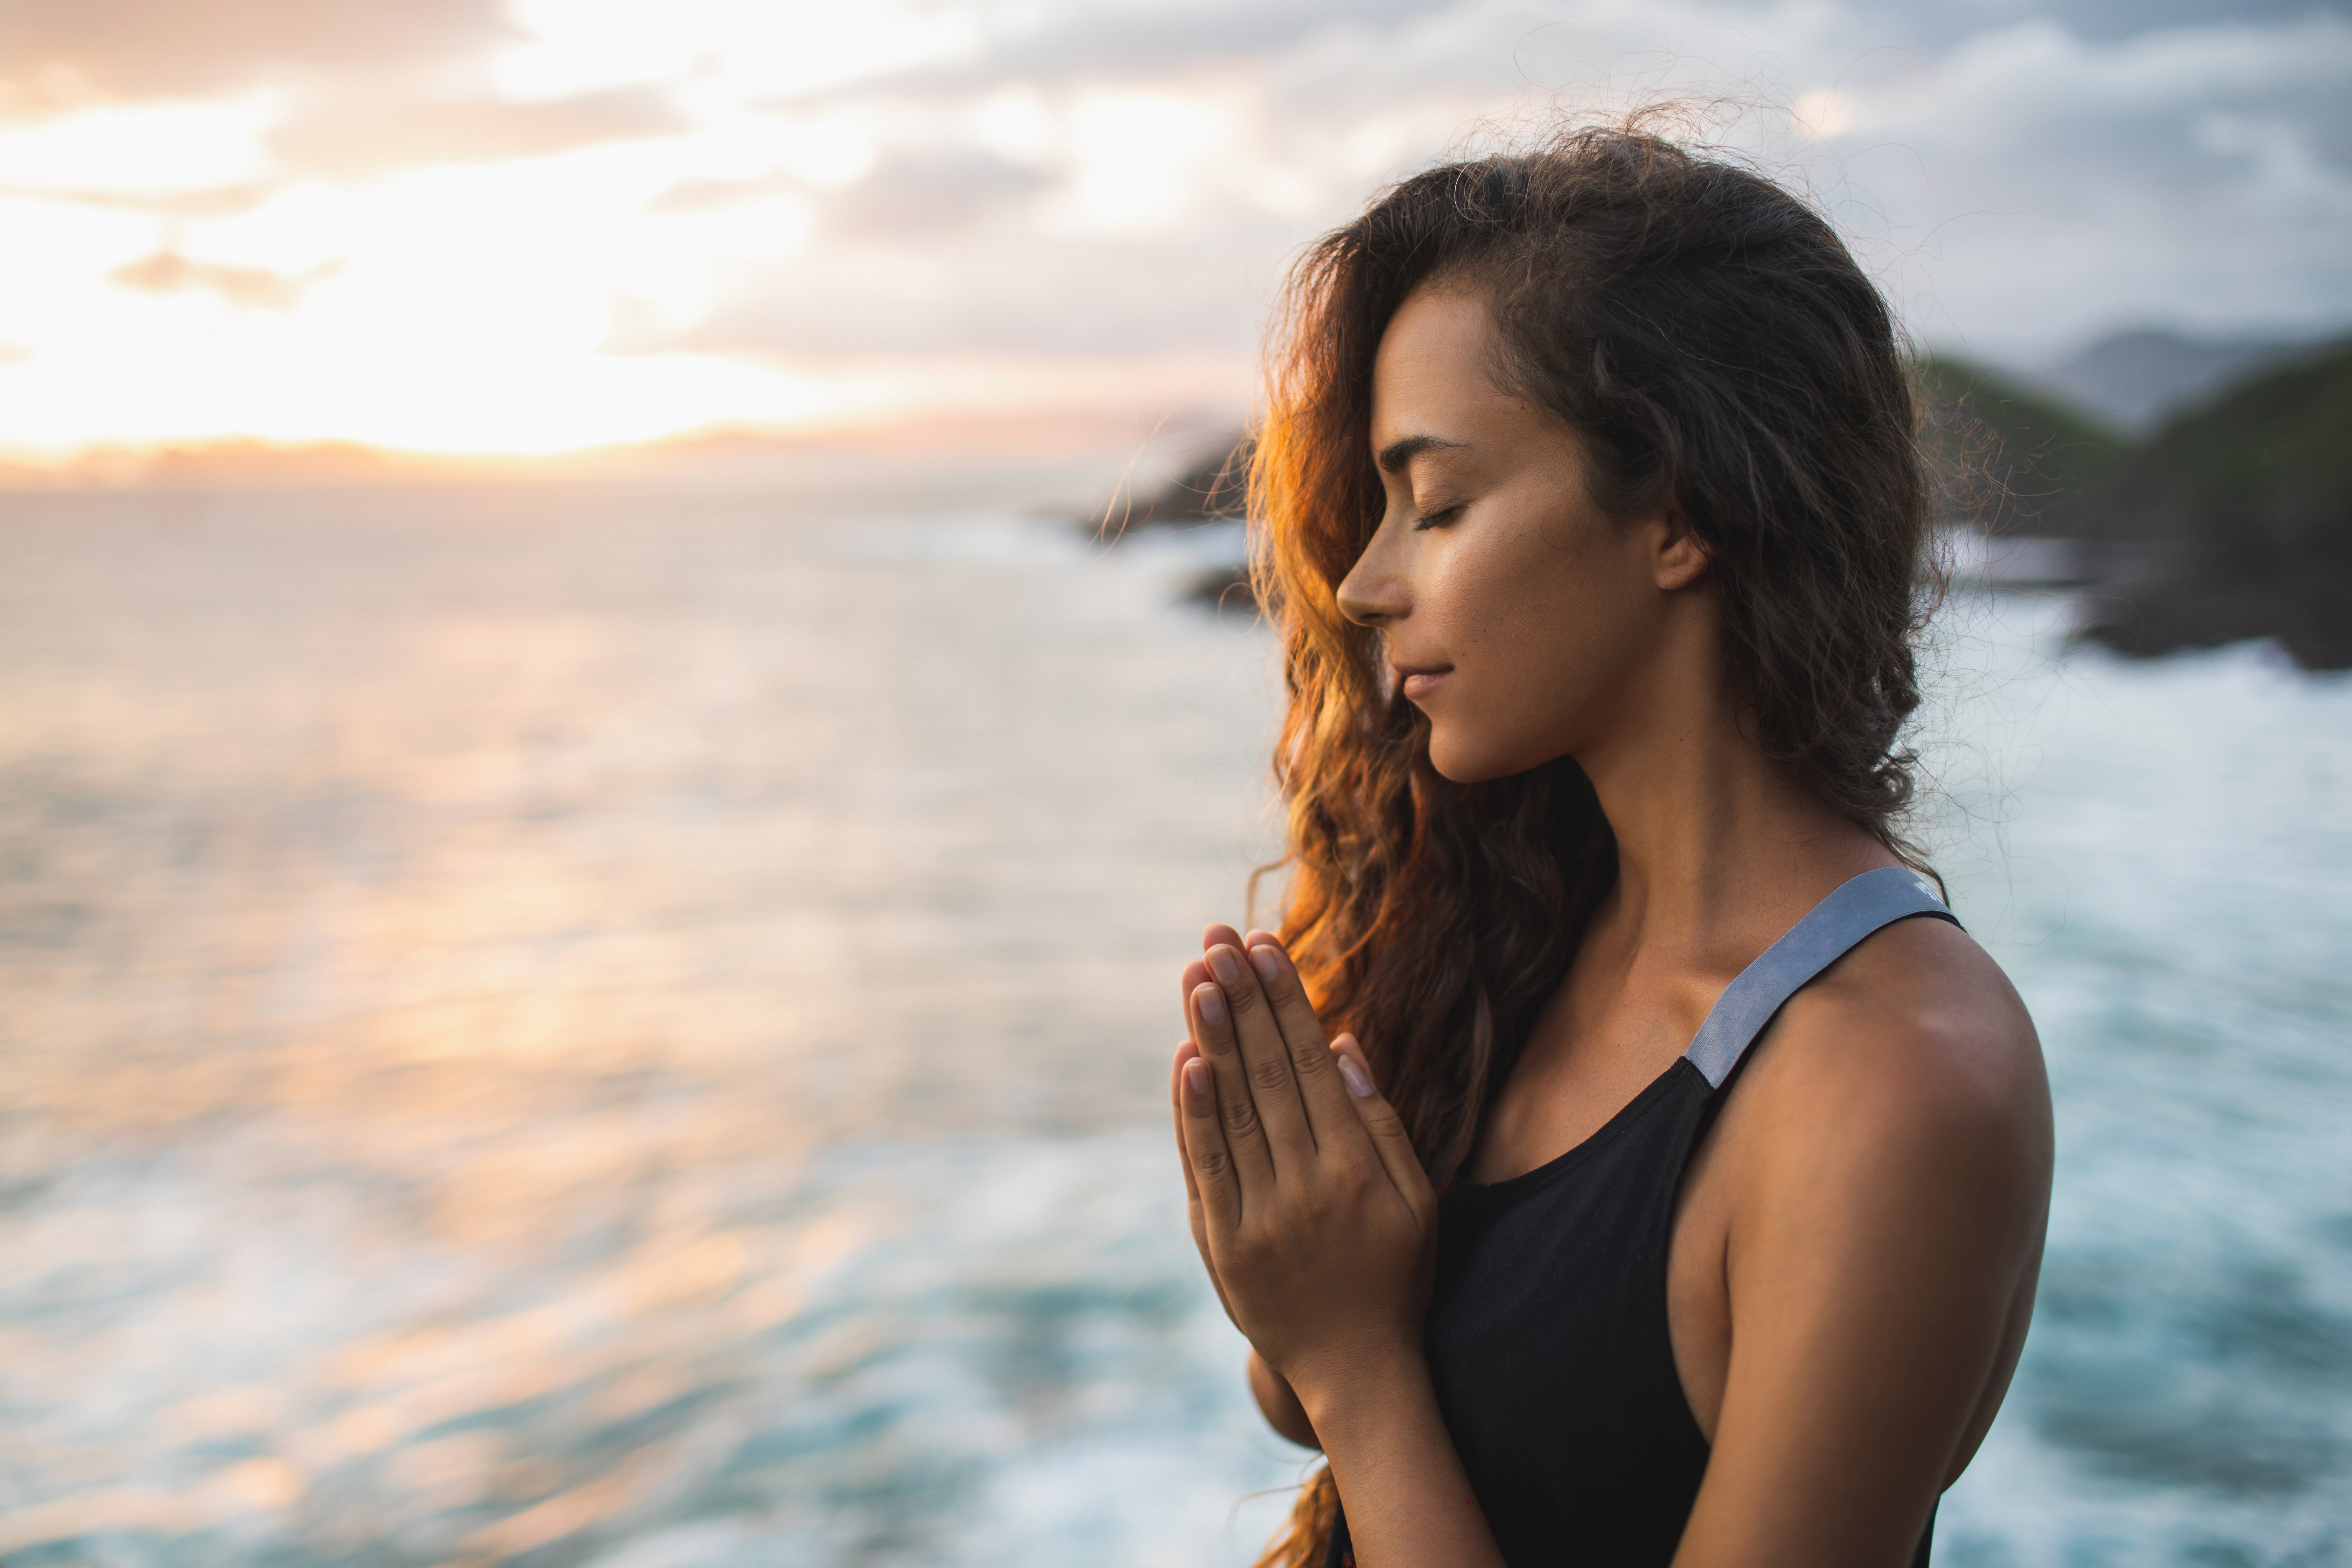 Une femme debout près de l'océan, les mains en position de prière, les yeux fermés | Source : Shutterstock